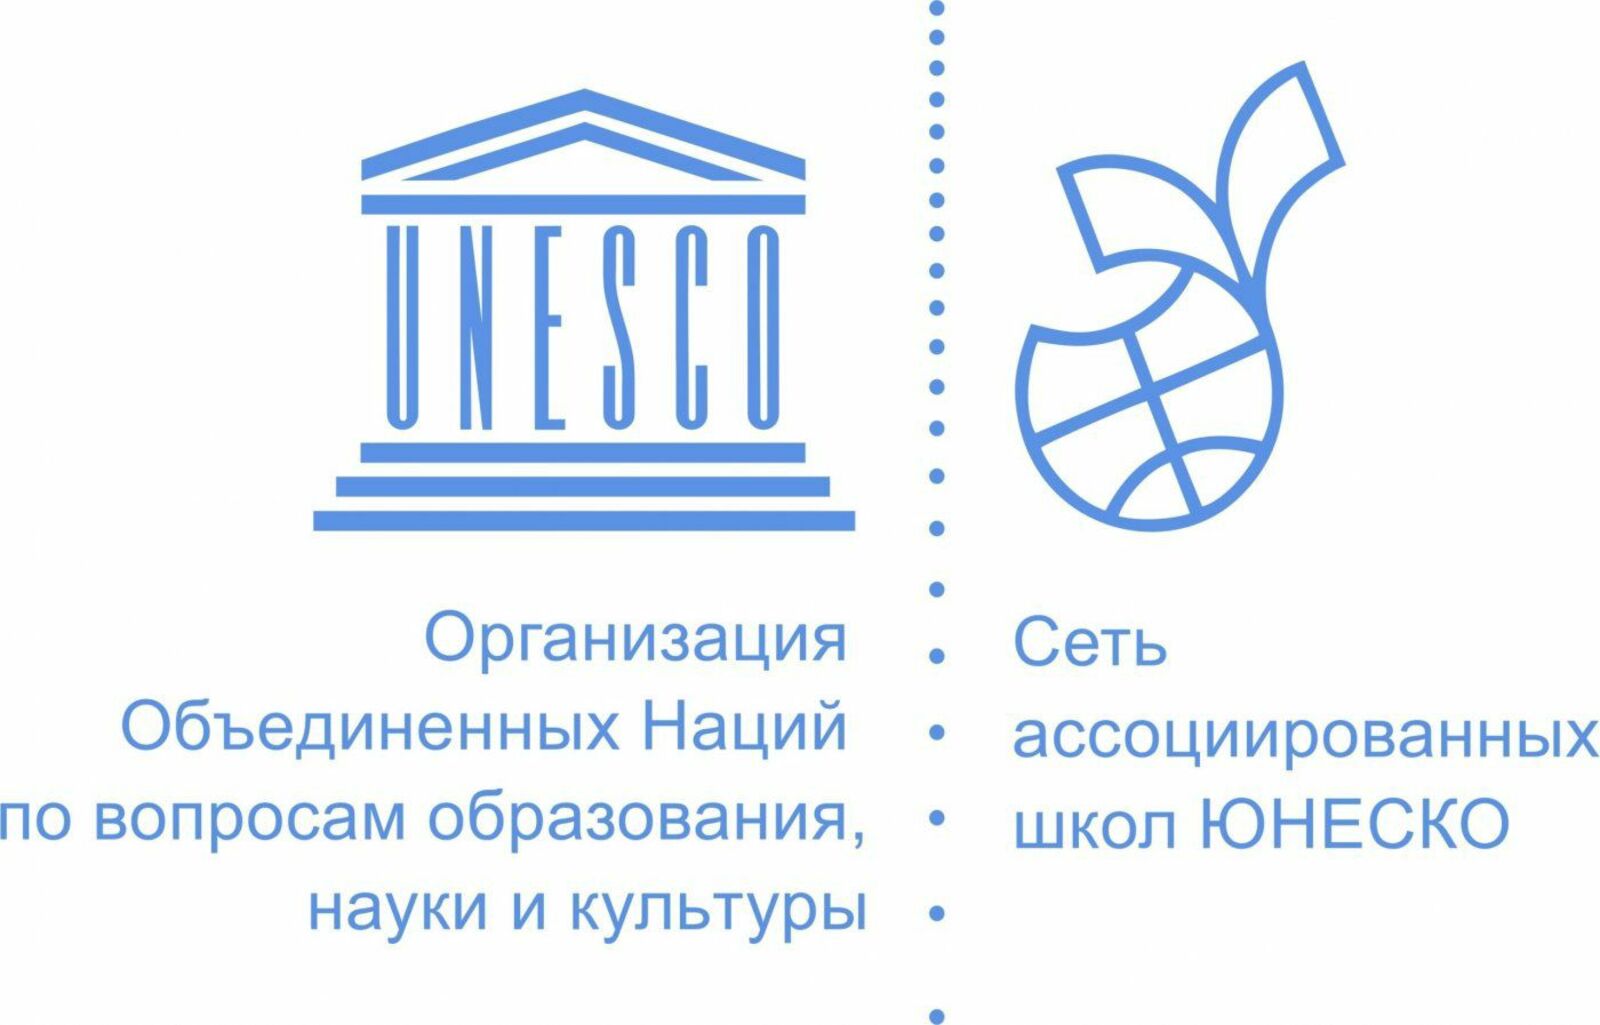 Сеть ассоциированных школ ЮНЕСКО. Эмблема школ ЮНЕСКО. Ассоциированные школы ЮНЕСКО эмблема. Ассоциированные школы ЮНЕСКО В России. По вопросам образования на данный